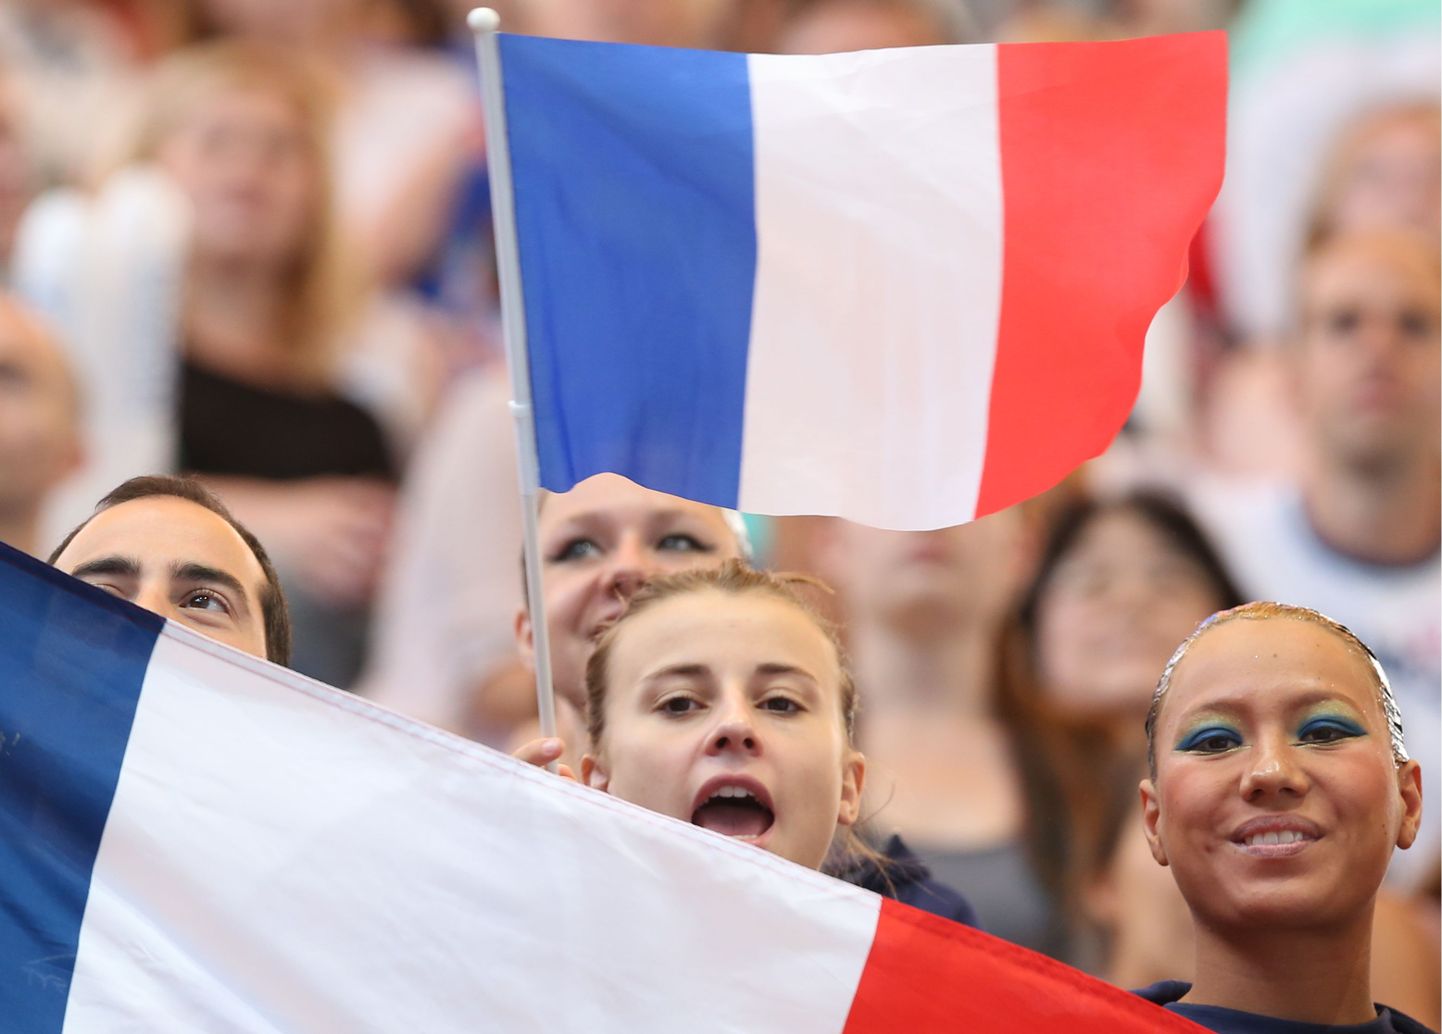 Prantsuse lipp. Pilt on illustratiivne